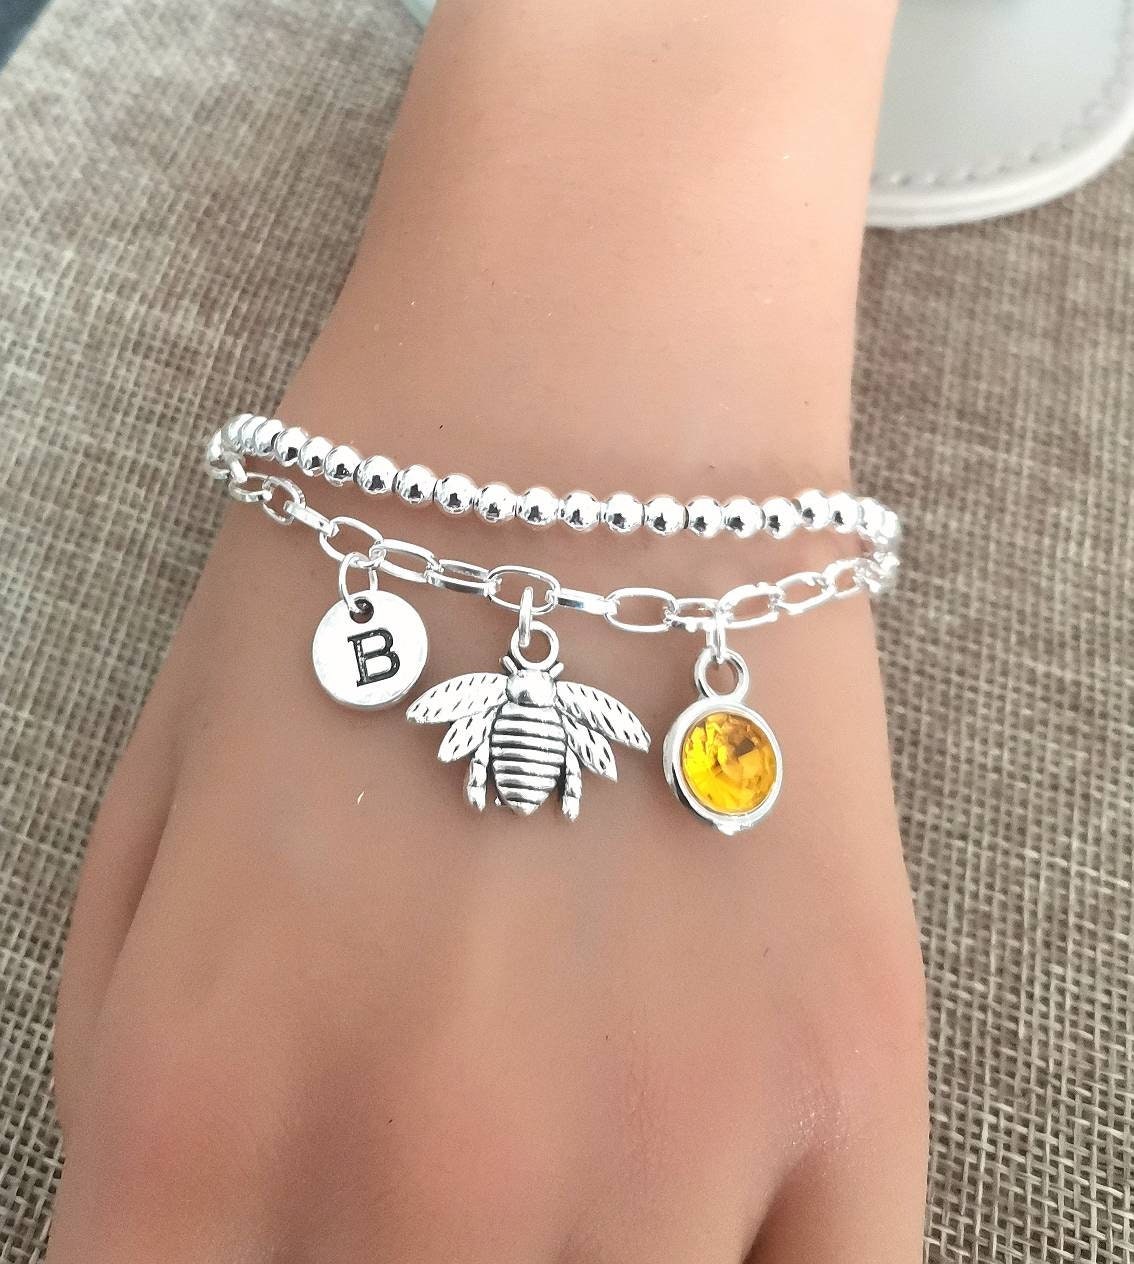 Women Bee Bracelet, Bee gifts for her, Bee Bracelet, Bee Jewelry, Bee charm, Bee Gifts for her, Bee charm gift for her, Gifts for Women